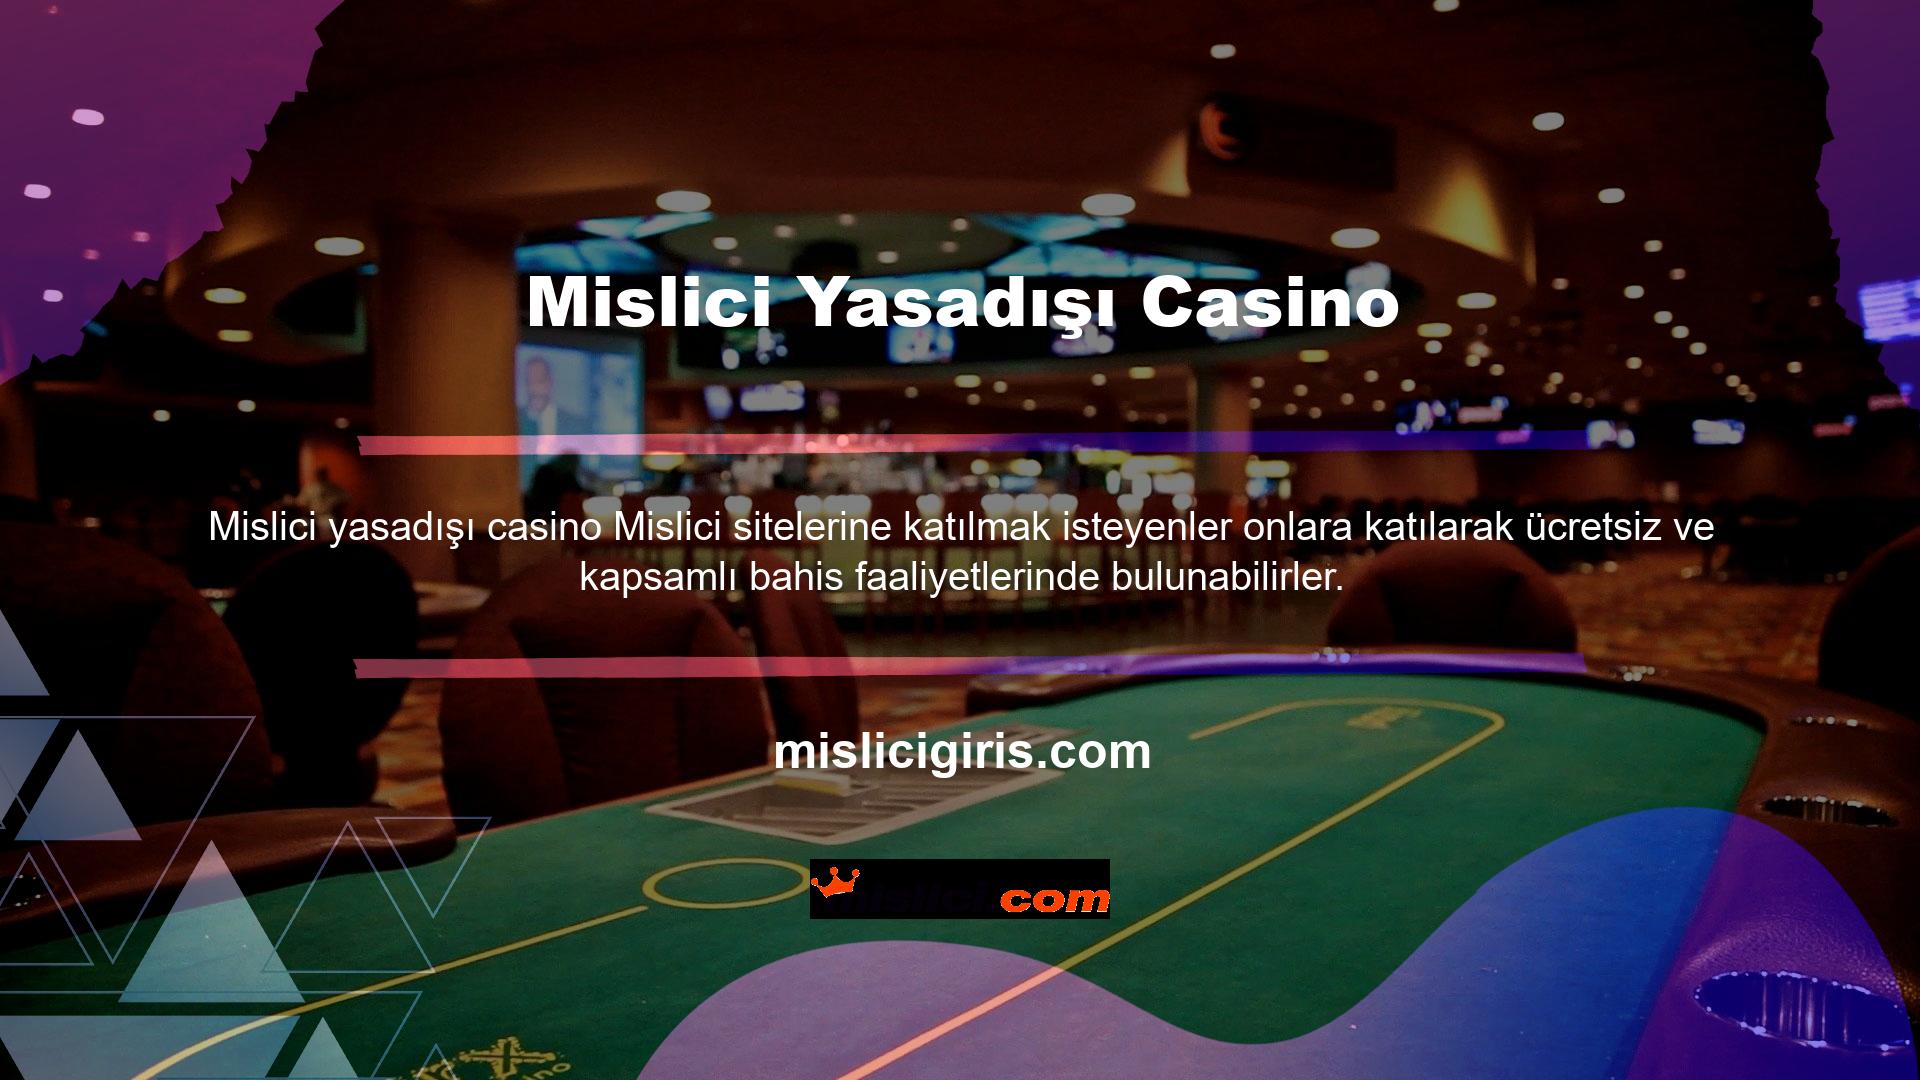 Para birimi işlemleriniz Casinonun son derece güvenli sistemi tarafından korunmaktadır